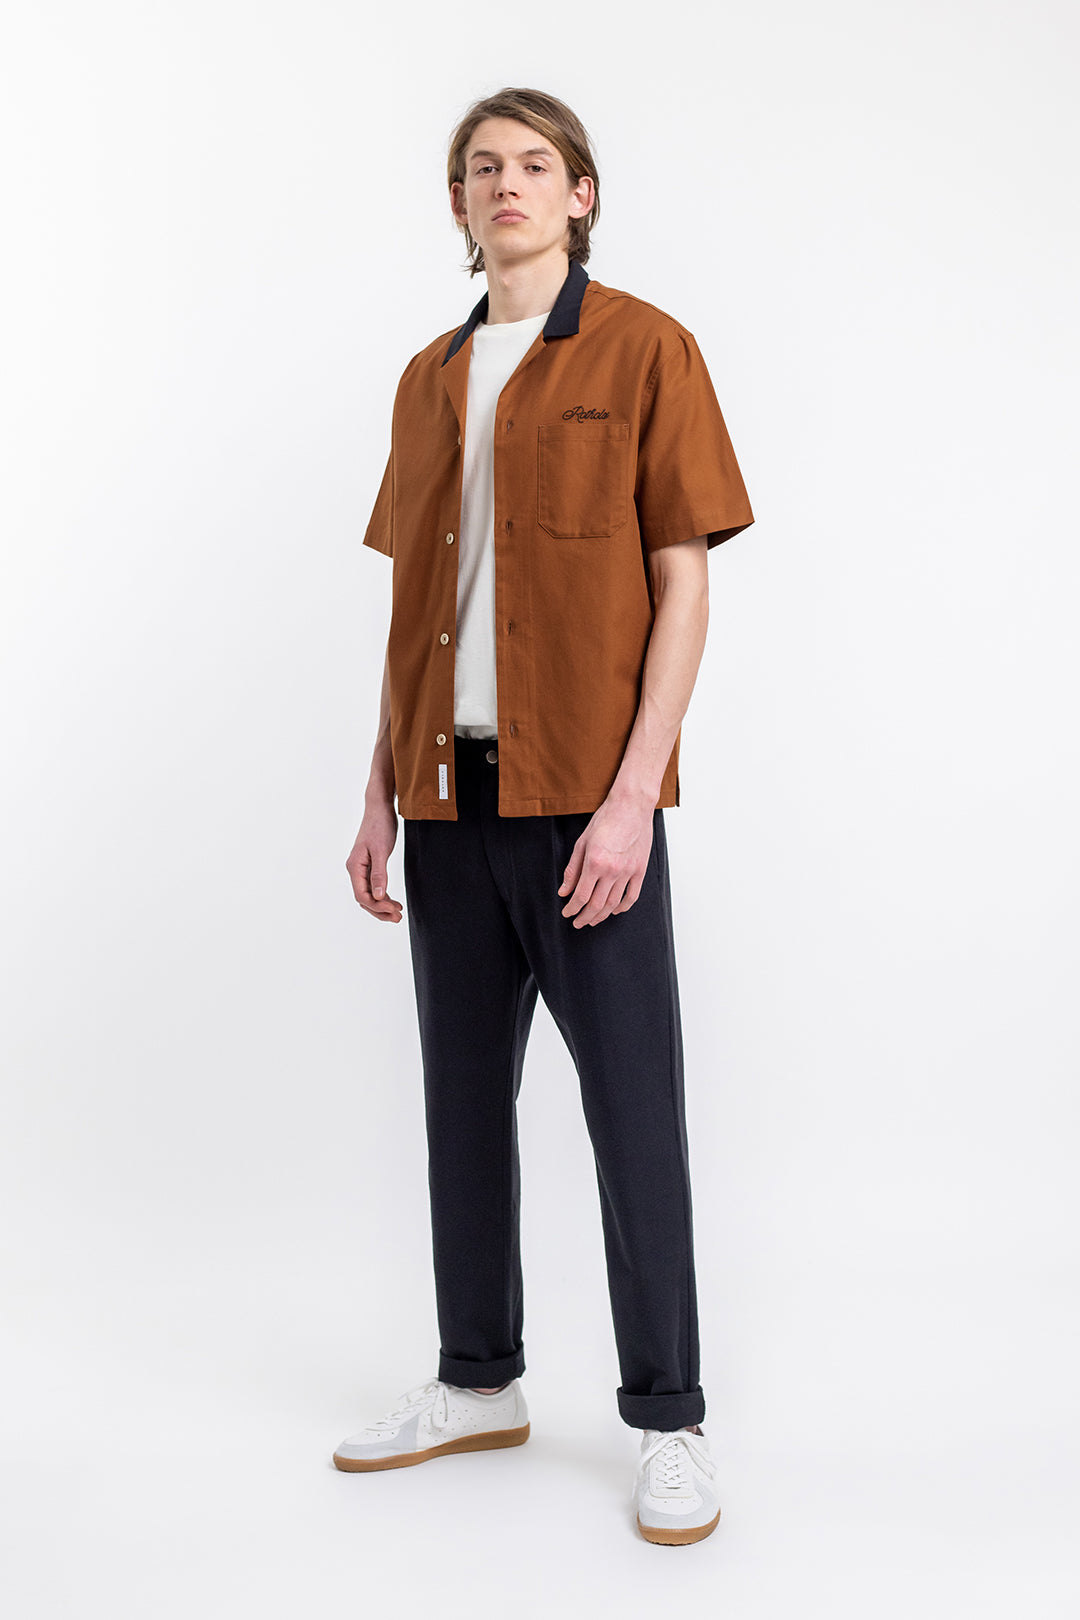 Orange, short-sleeved bowling shirt 100% organic cotton from Rotholz